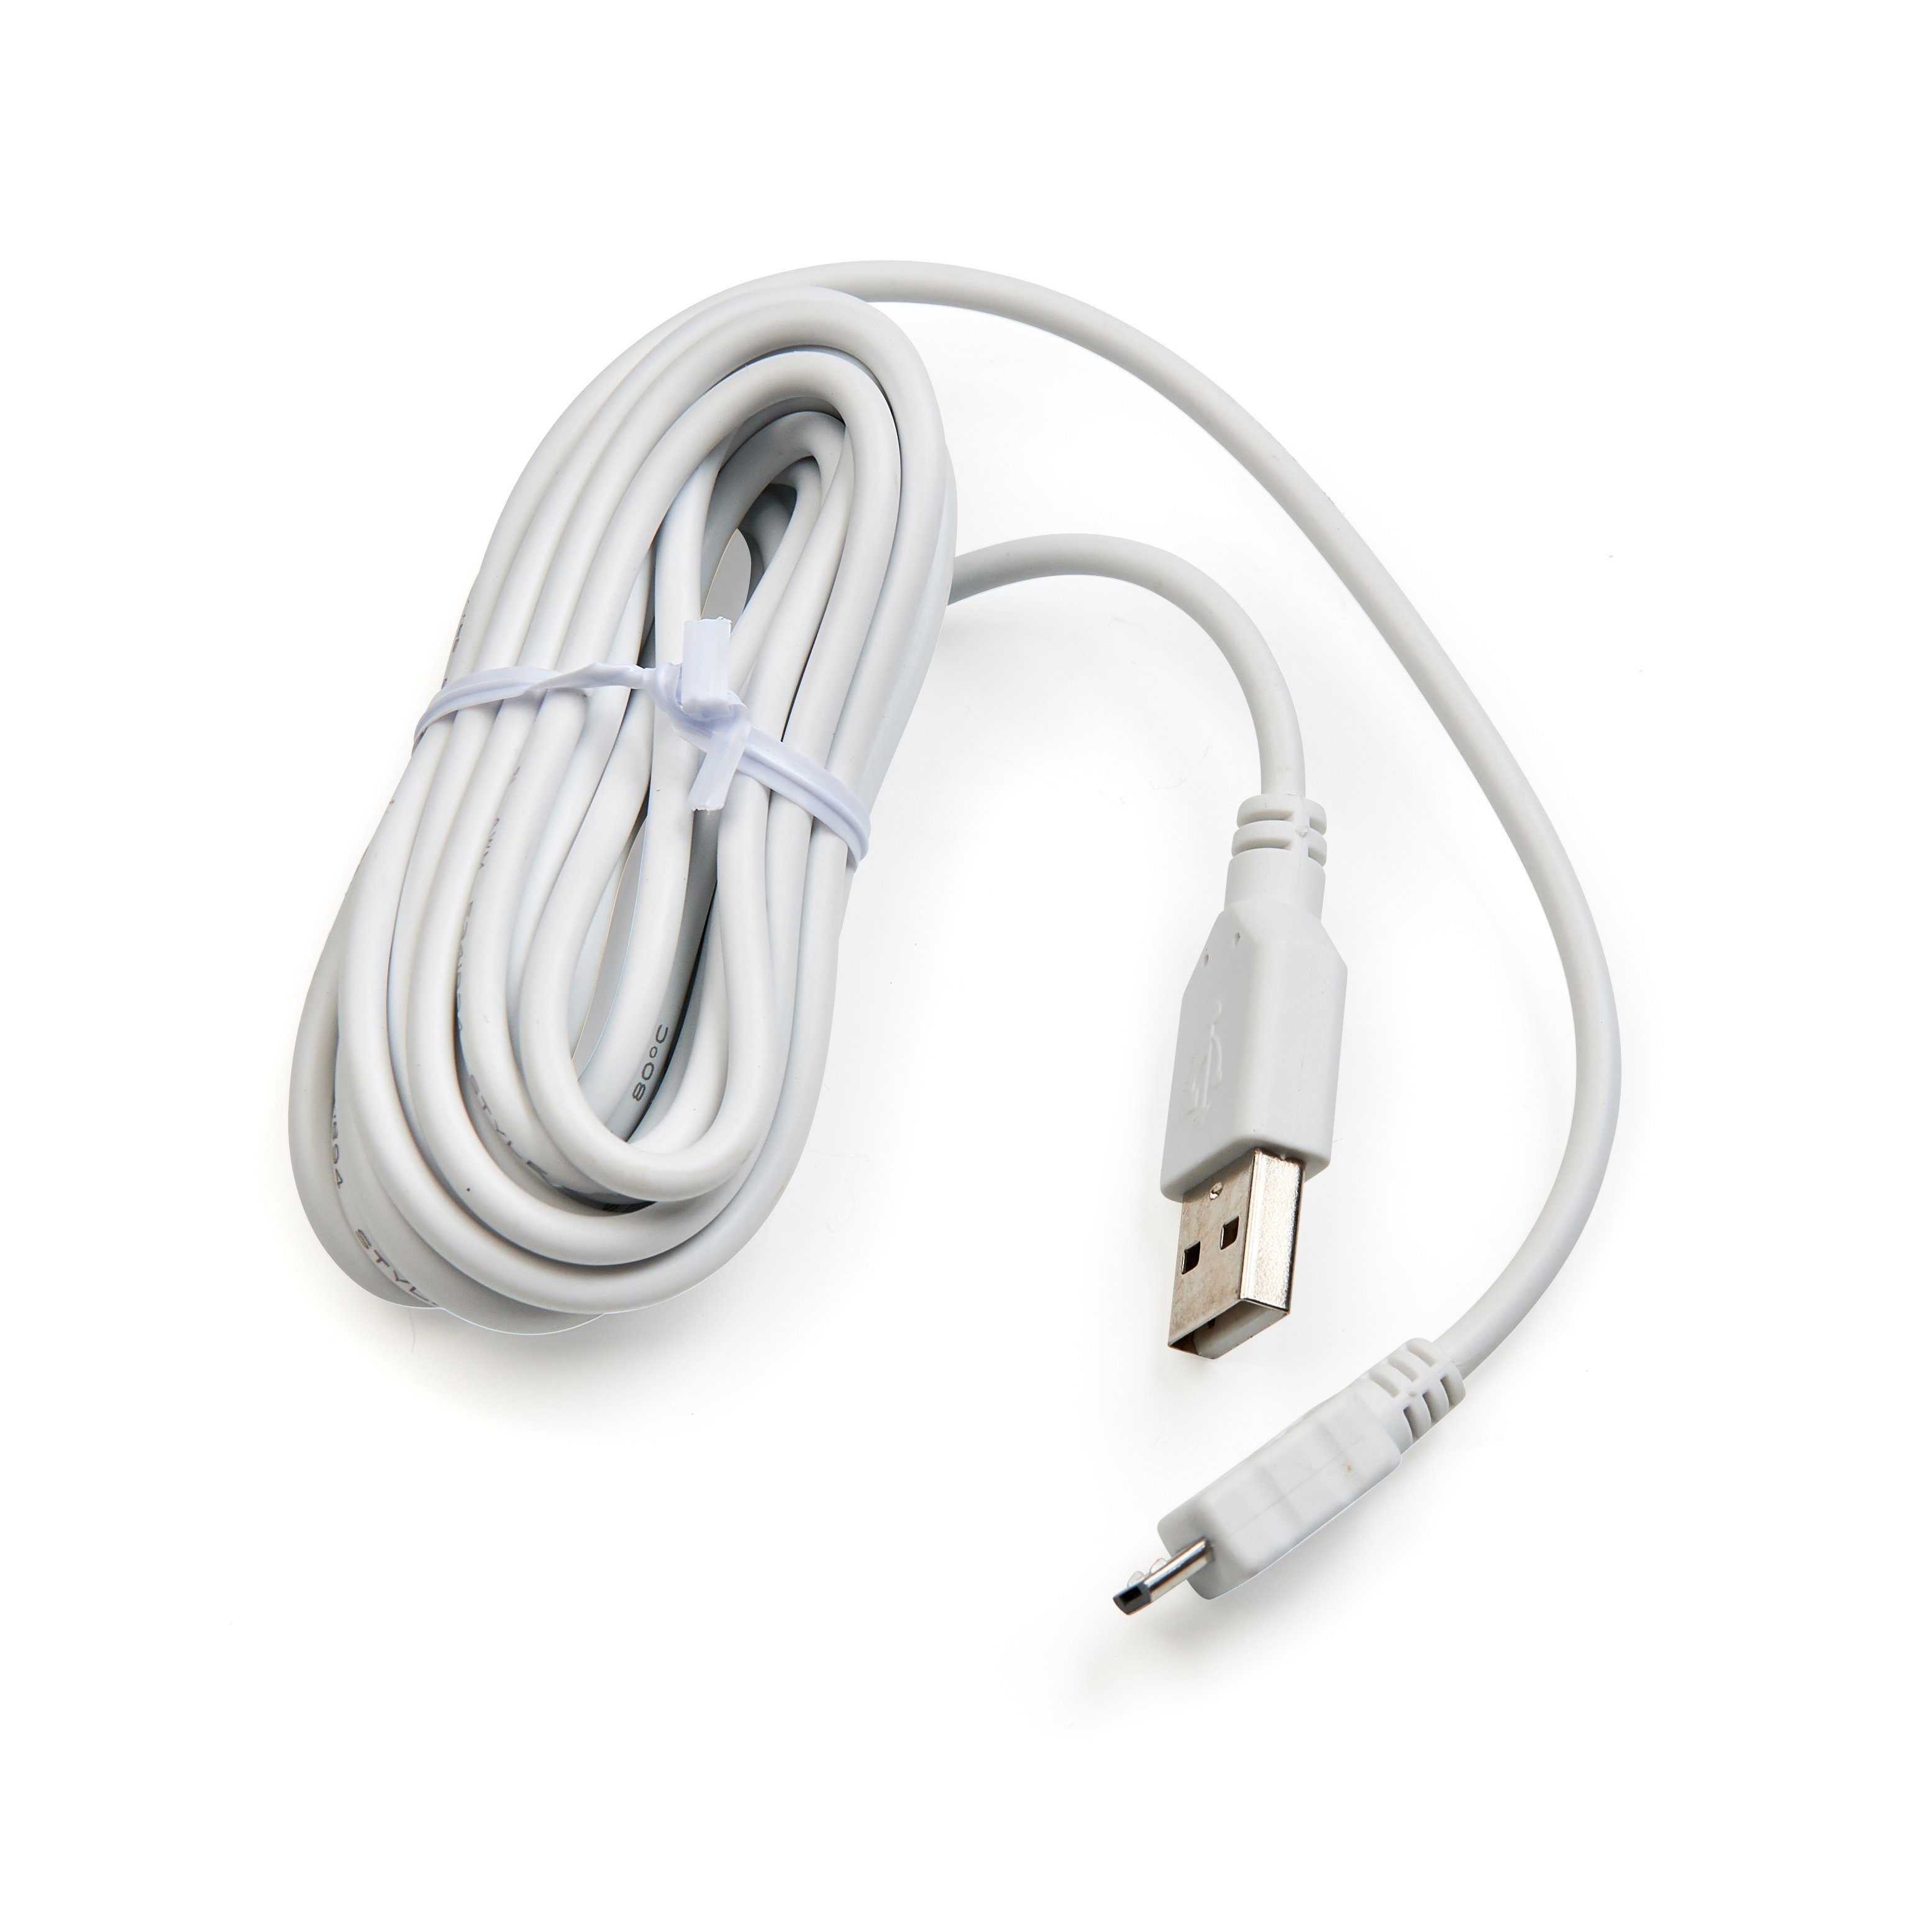 Motionblinds MotionBlinds USB-Kabel für MotionBlinds-Motoren, 3 Meter Länge Smart Home-Verbindungskabel